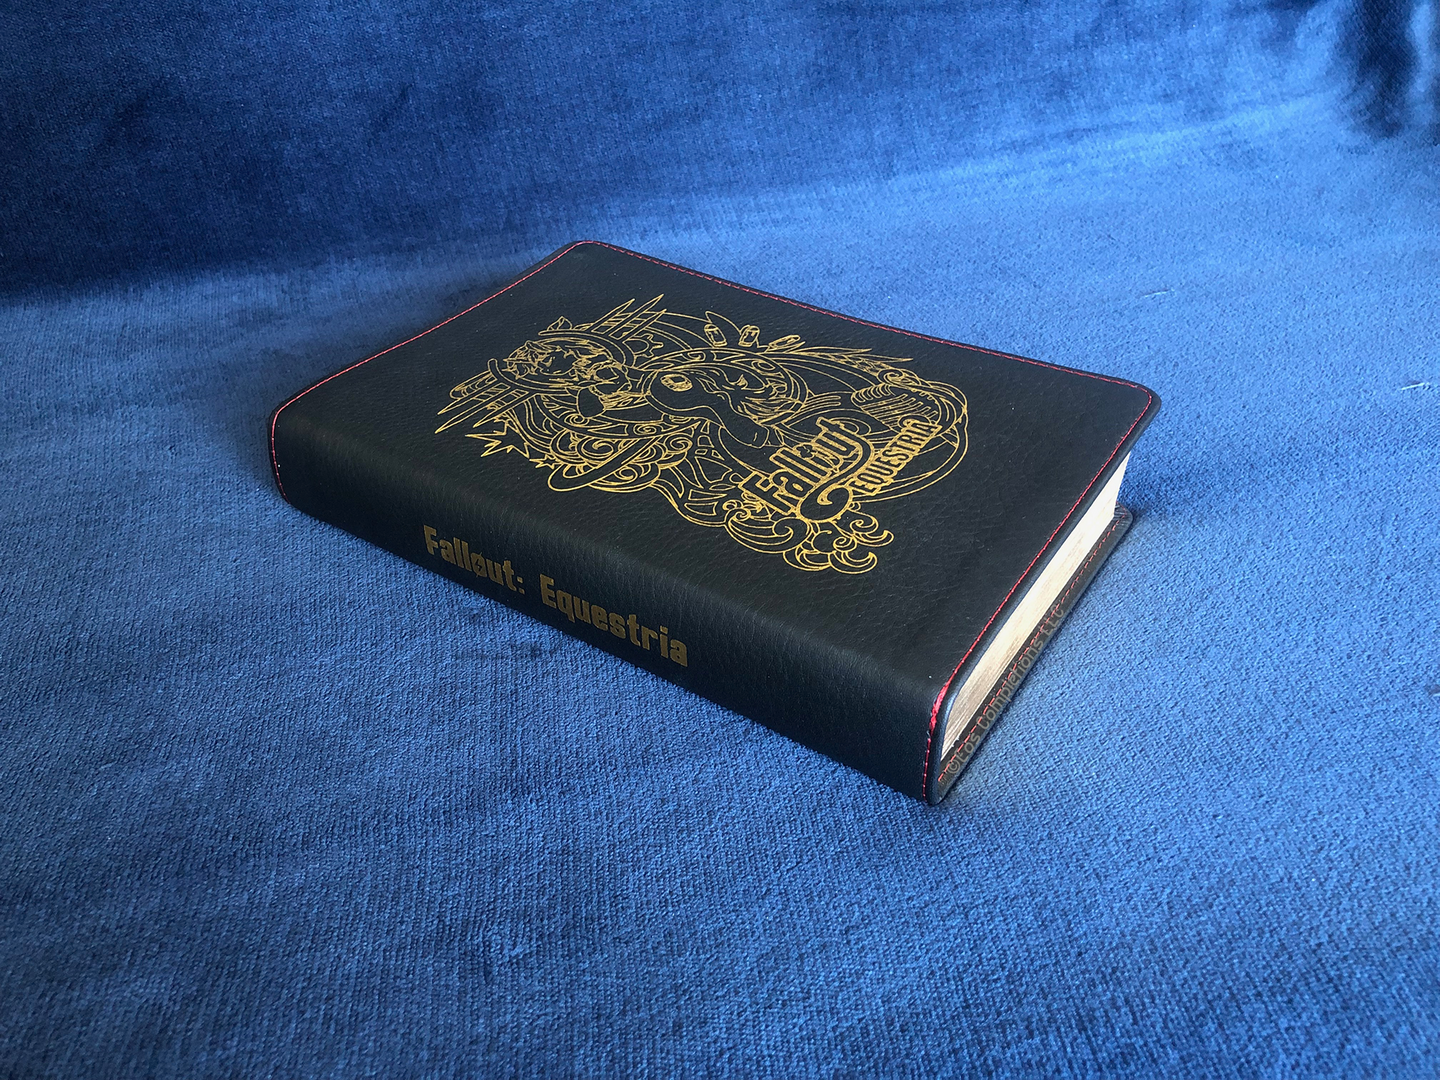 Fallout Equestria – The Black Book Edition